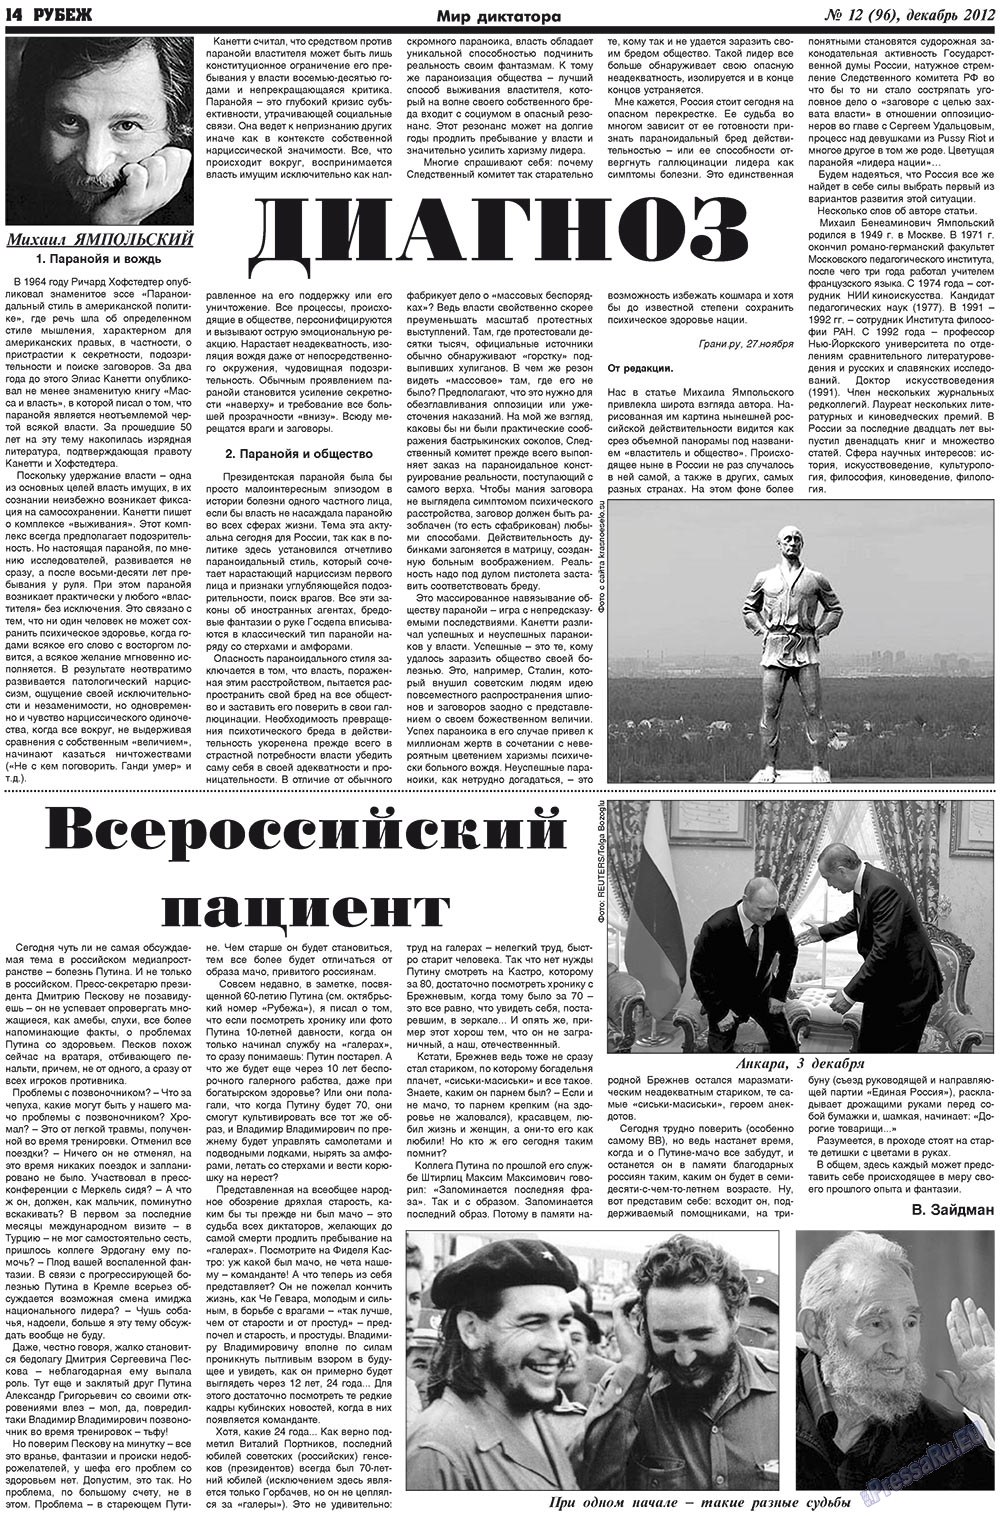 Рубеж (газета). 2012 год, номер 12, стр. 14